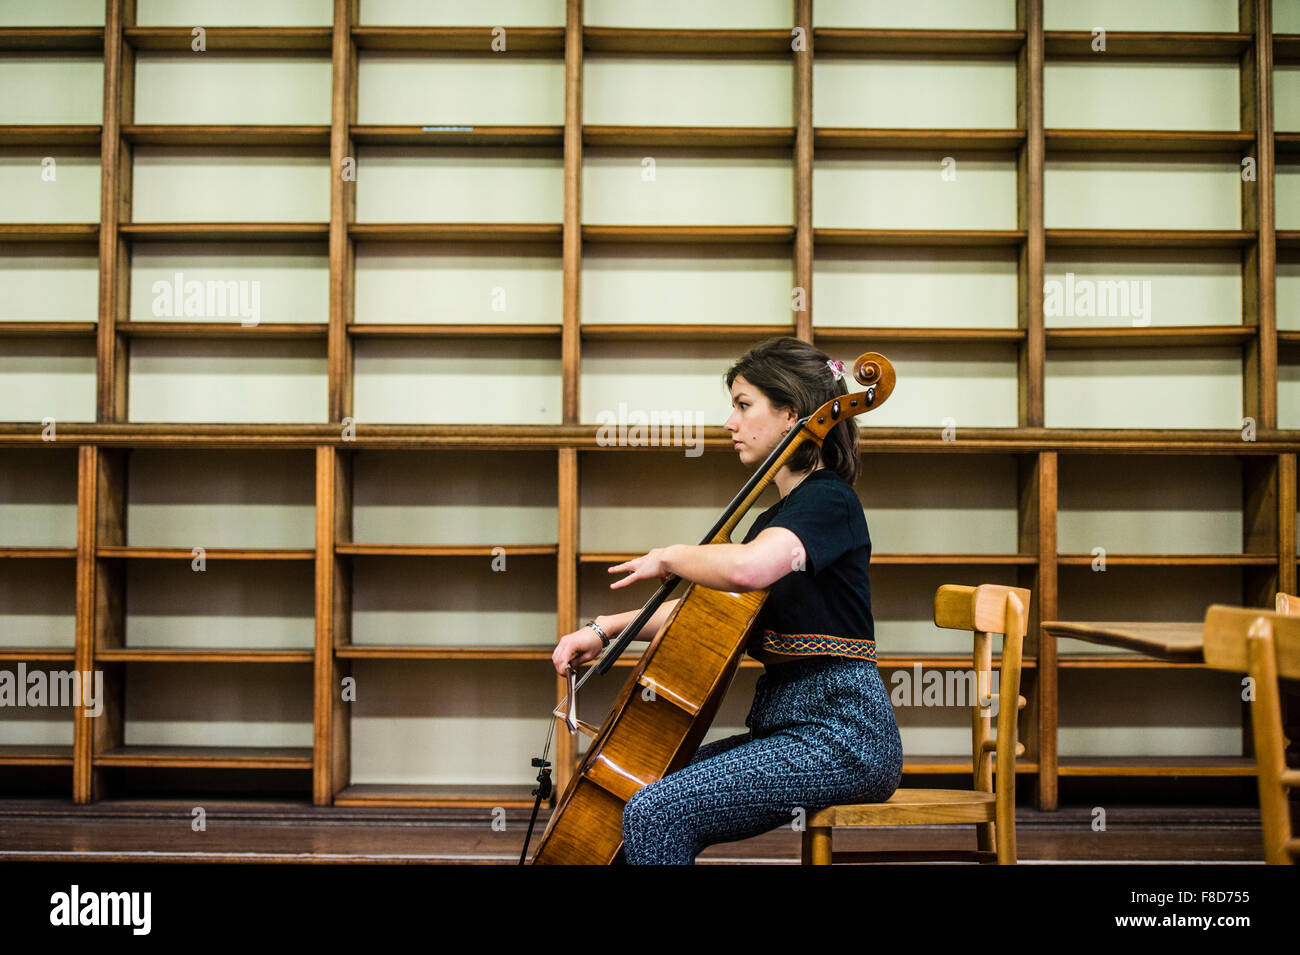 Los jóvenes músicos clásicos: El violonchelista del Cuarteto de Cuerda Solem jugando en solitario en su cello en una biblioteca vacía en Aberystwyth Music Fest 2015 Foto de stock